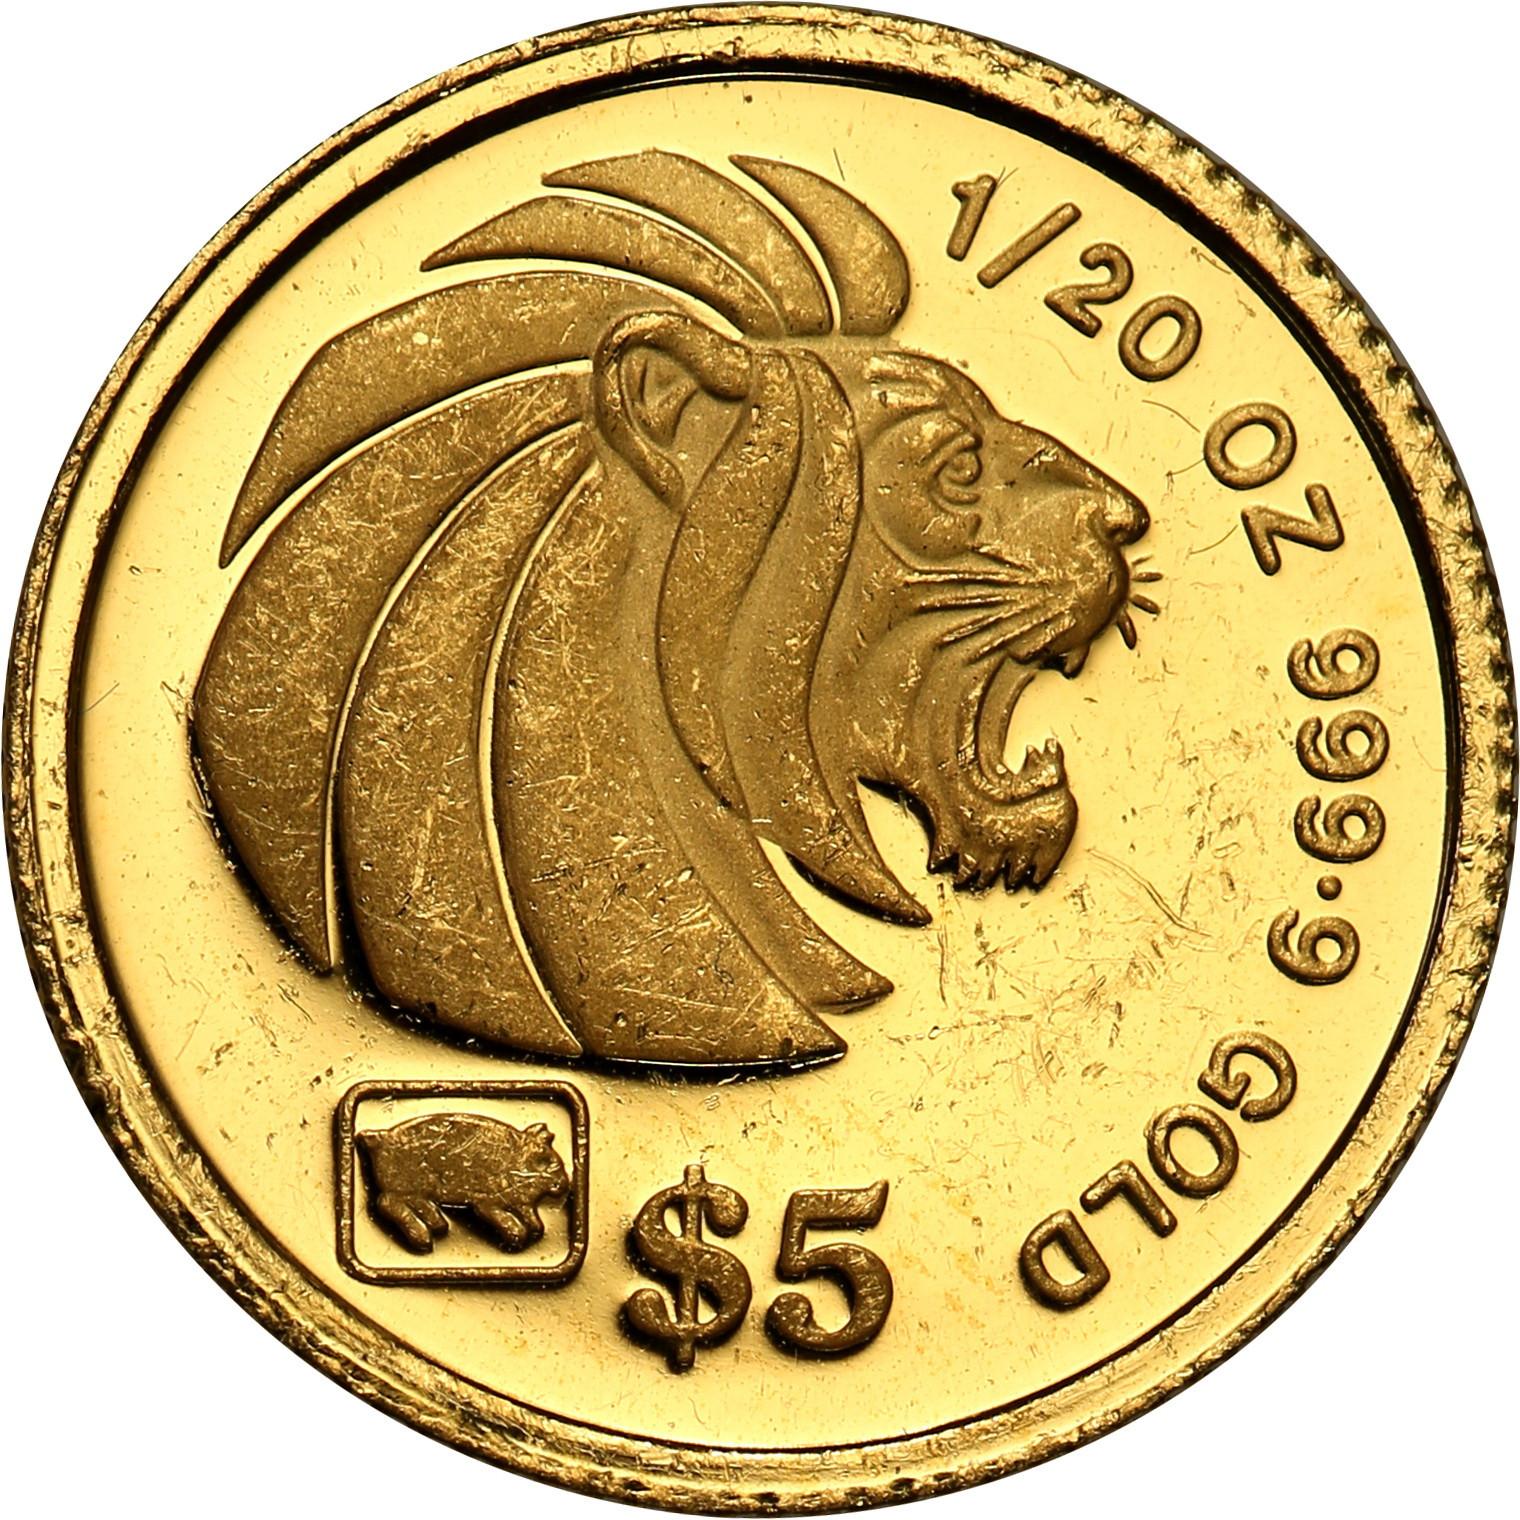 Singapur 5 dolarów 1995 st. L – 1/20 Uncji złota